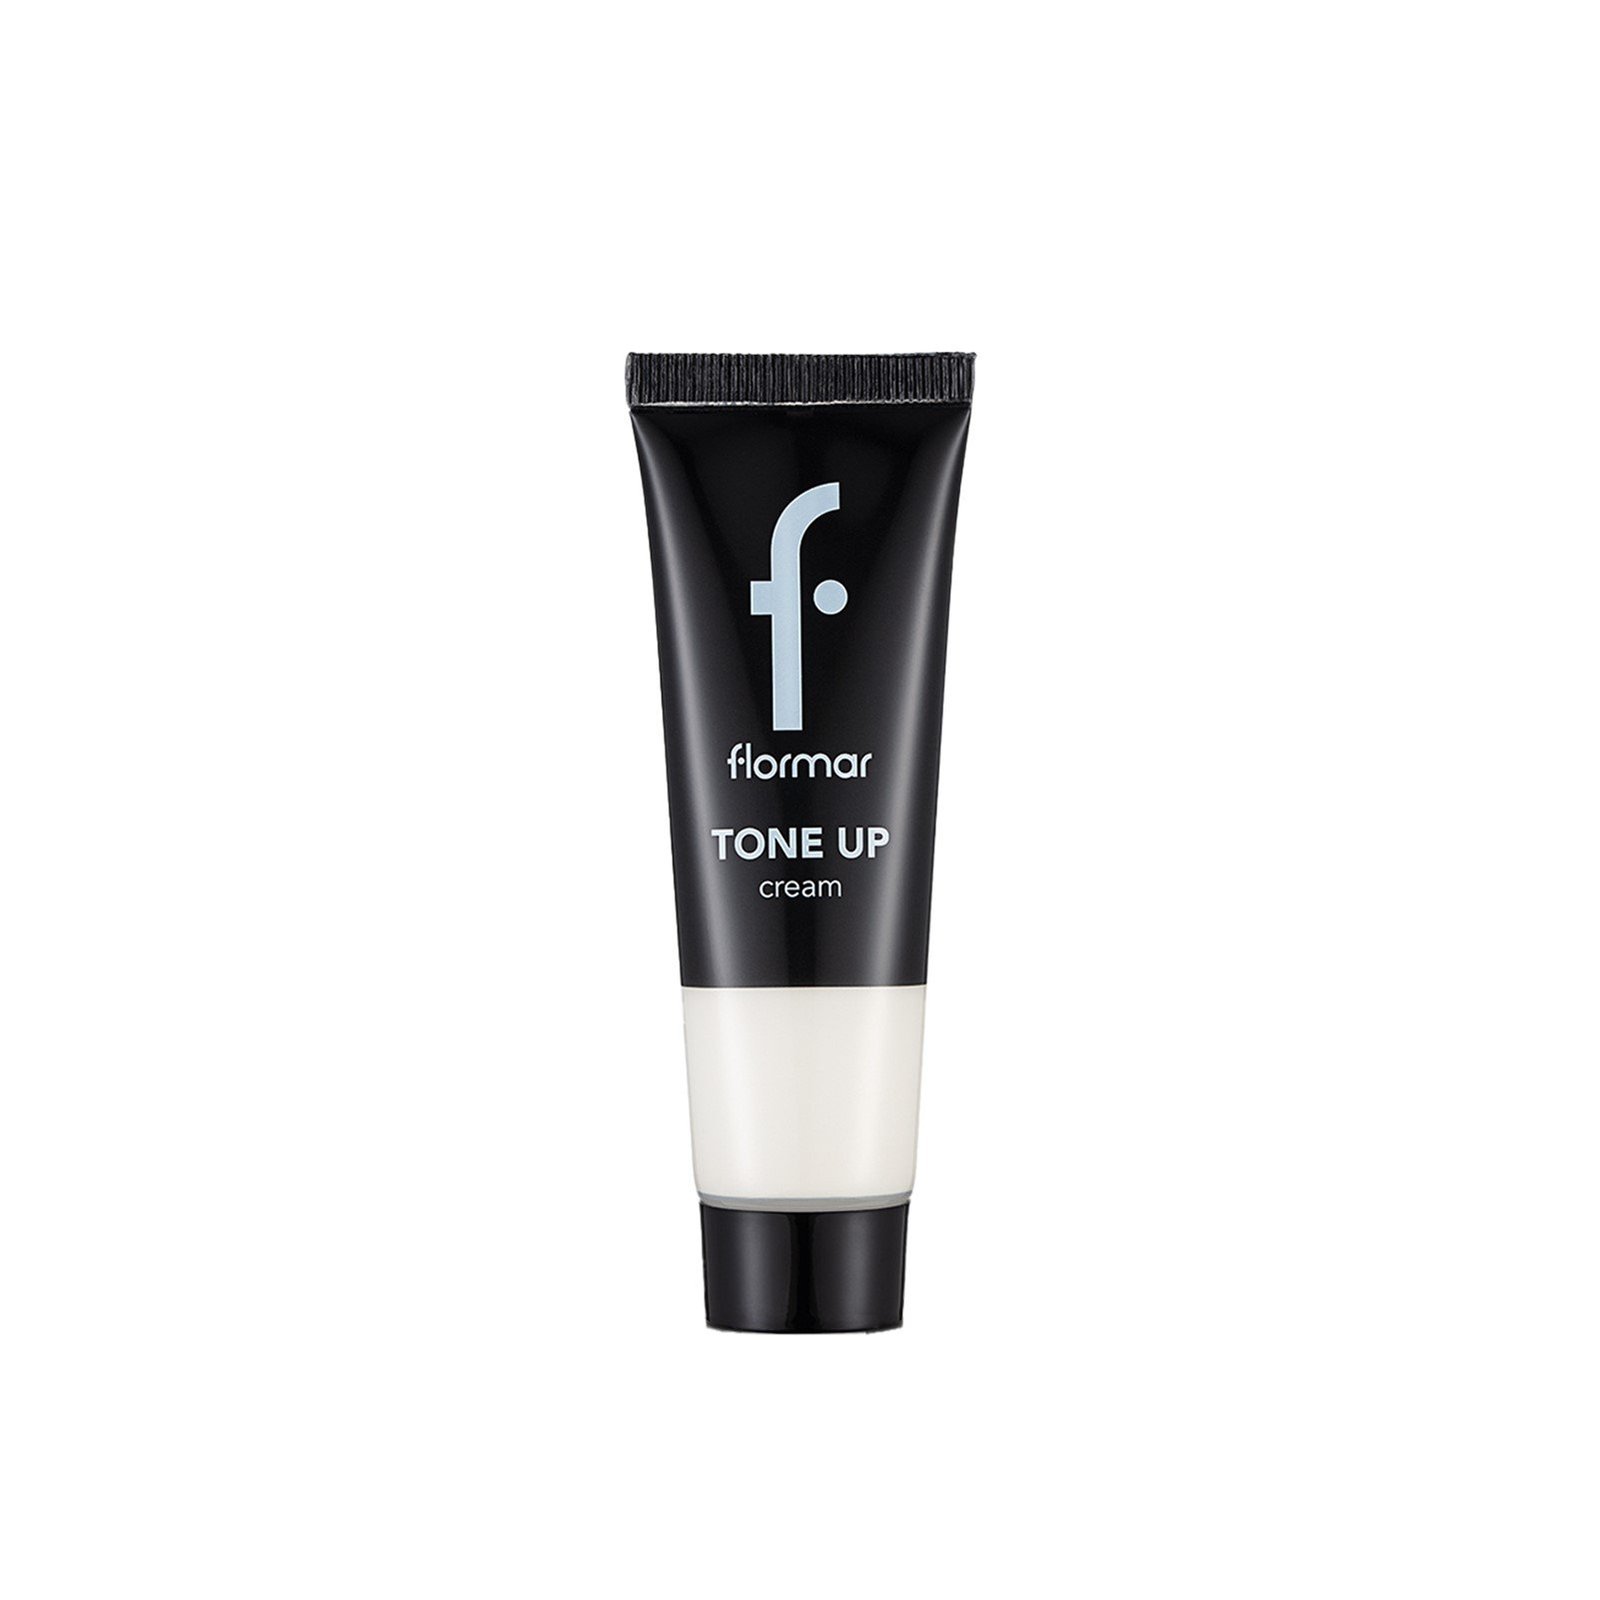 Flormar Tone Up Cream 25ml (0.85 fl oz)